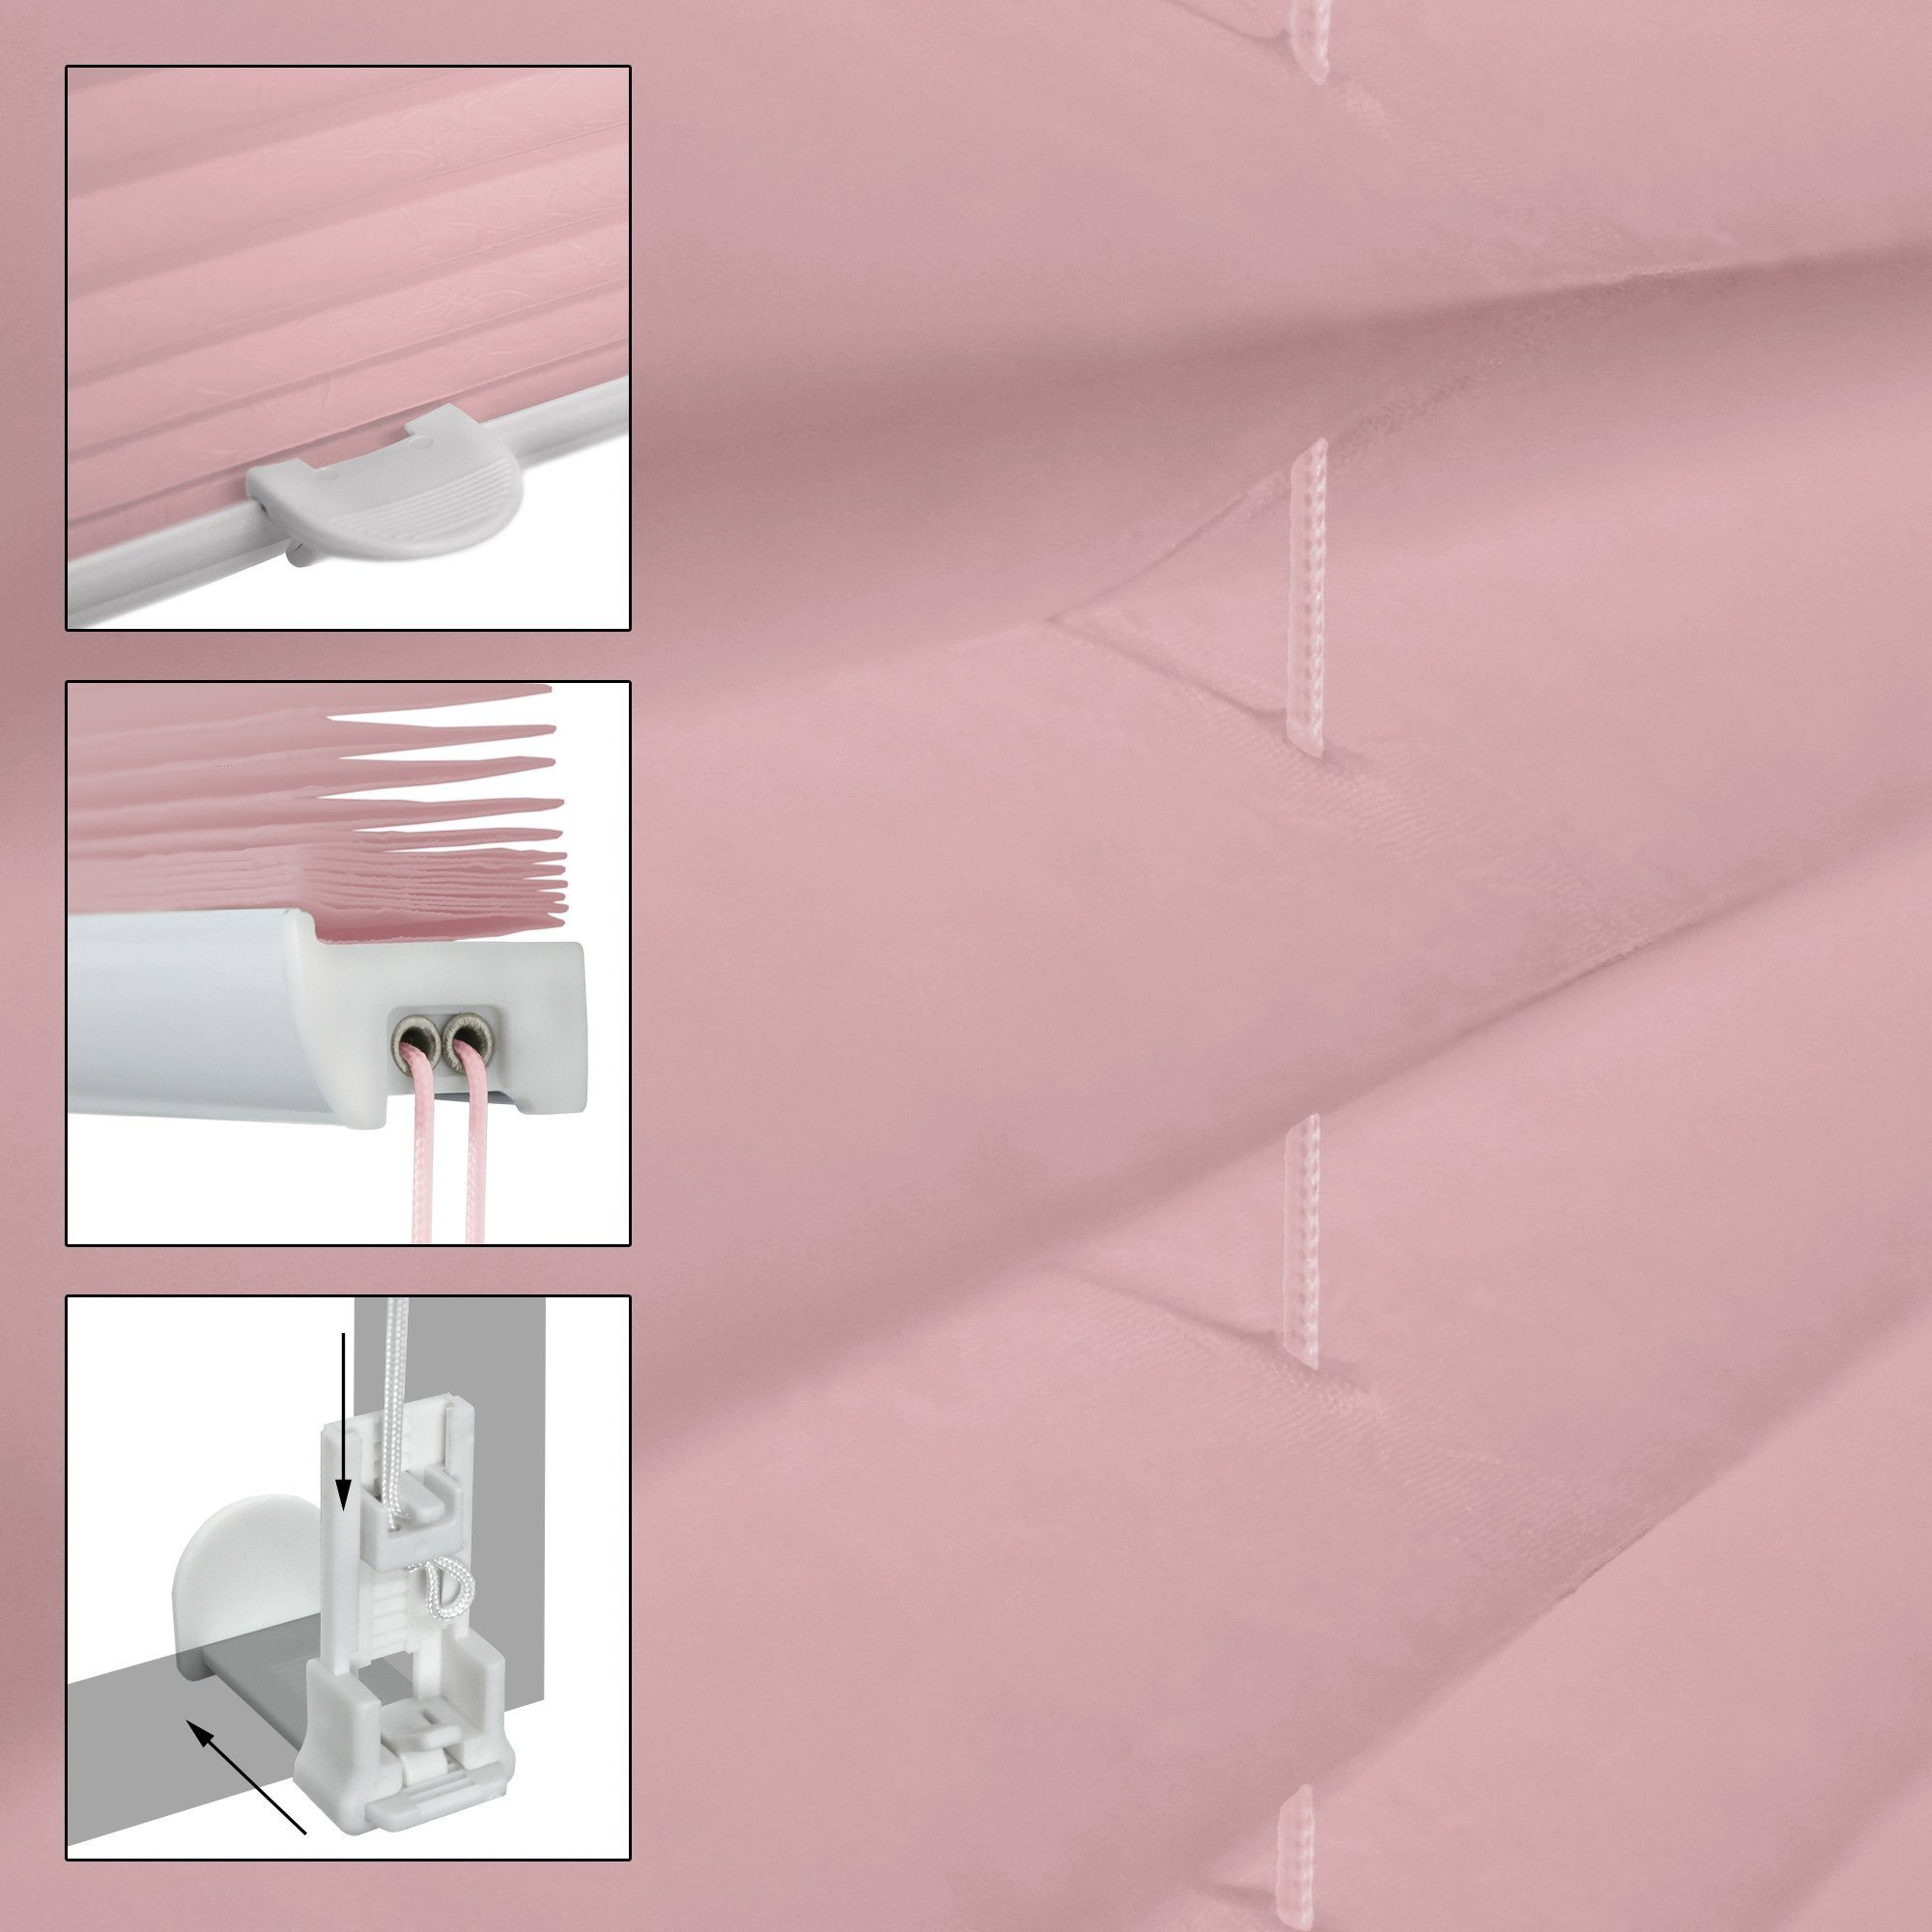 Plissee rosa, 100x200 cm, inkl. Blickdicht 100x200cm EasyFix Klemmfix Rosa Klemmträger mit ECD Germany, ohne Klemmfix, Befestigungsmaterial, Bohren